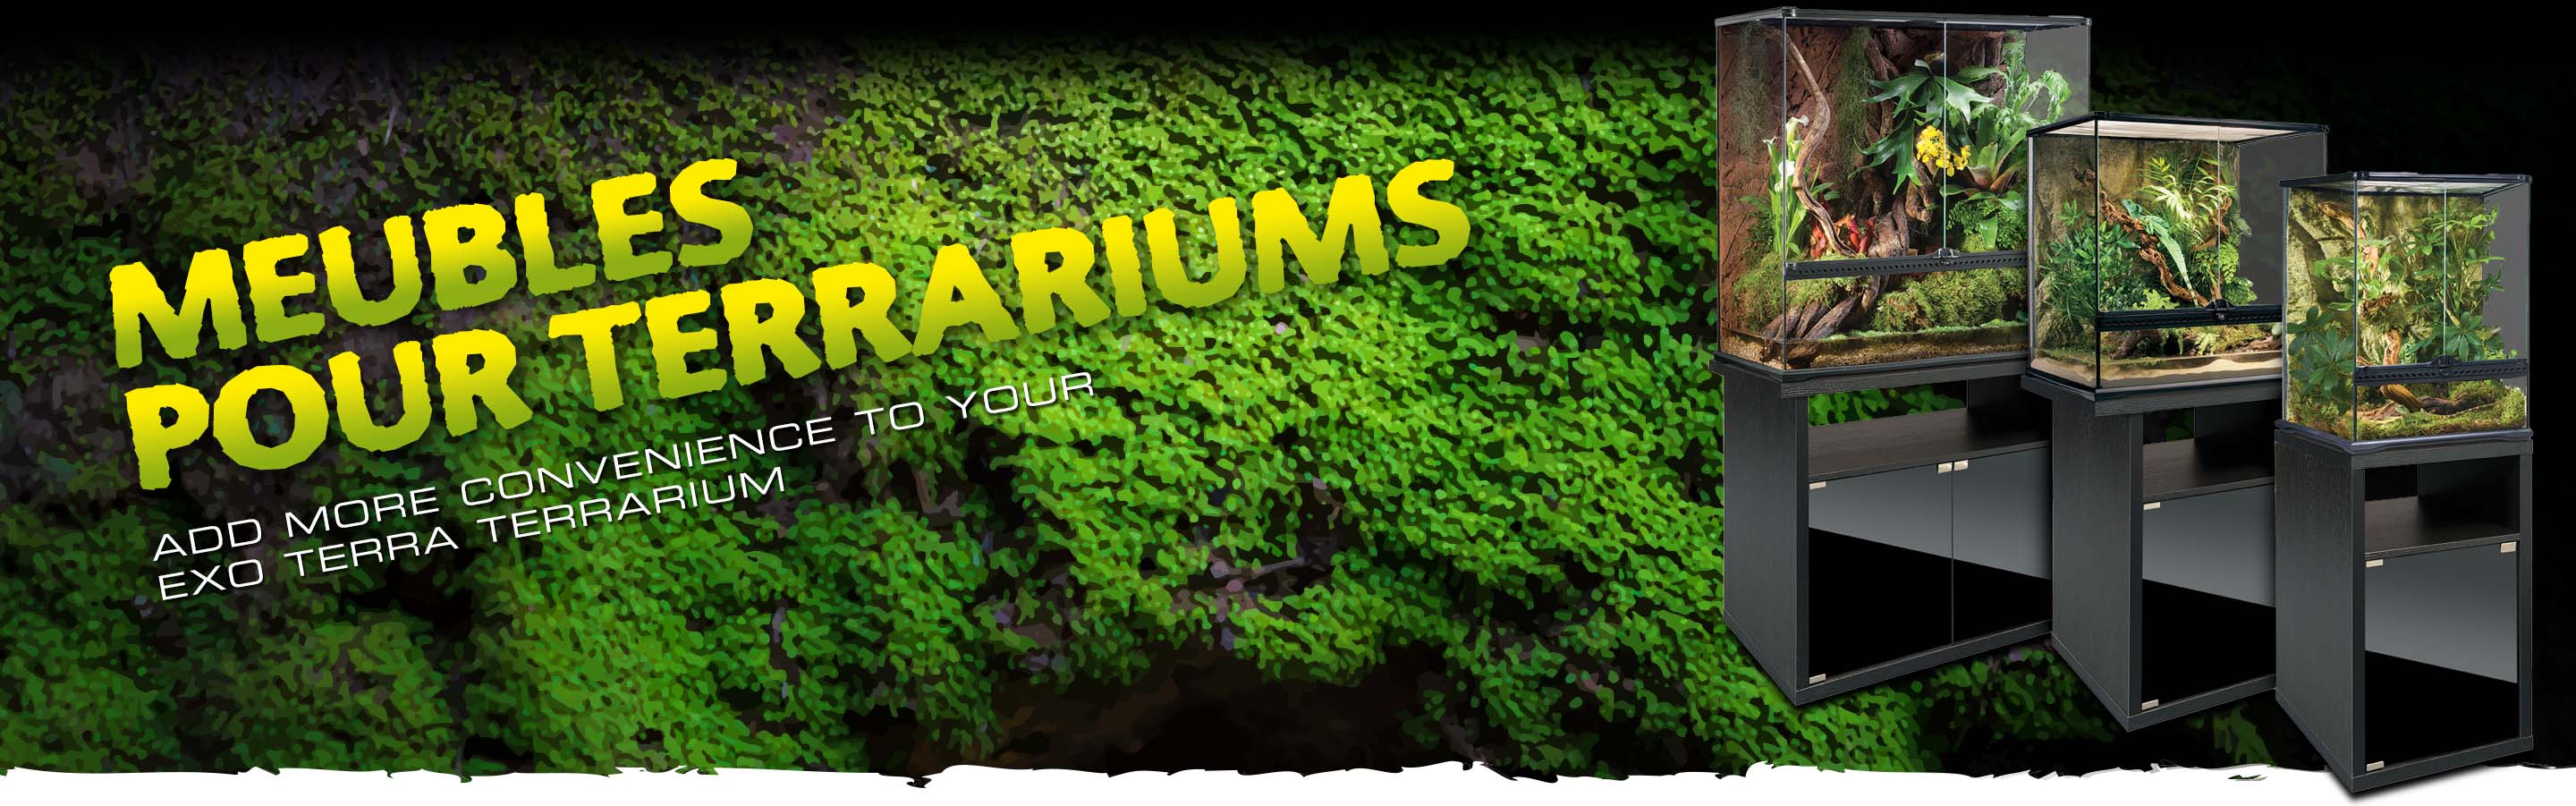 Meubles pour terrariums